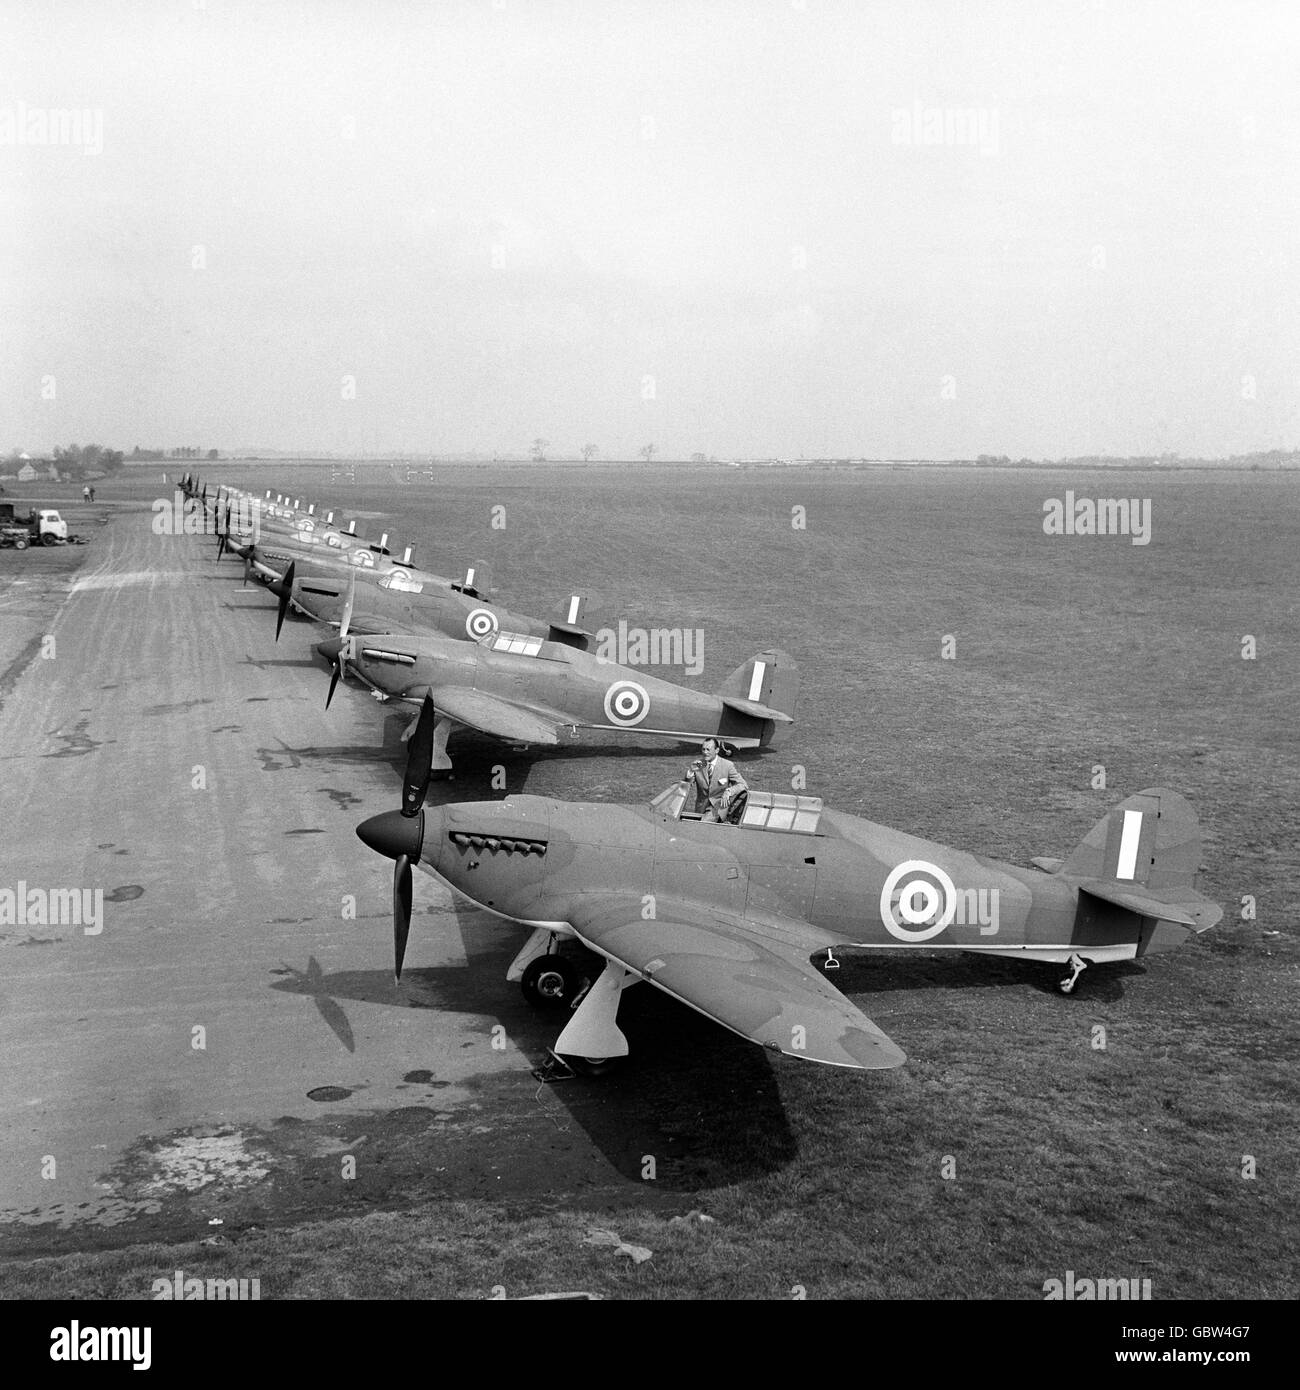 Nostalgische Besetzung von Hurricanes und Spitfires, den Kämpfern des letzten Krieges, die die Schlacht von Großbritannien gewonnen haben, bei RAF Henlow, Bedfordshire, wo sie bereit sind, erneut für den Film des epischen Sieges zu kämpfen. Stockfoto